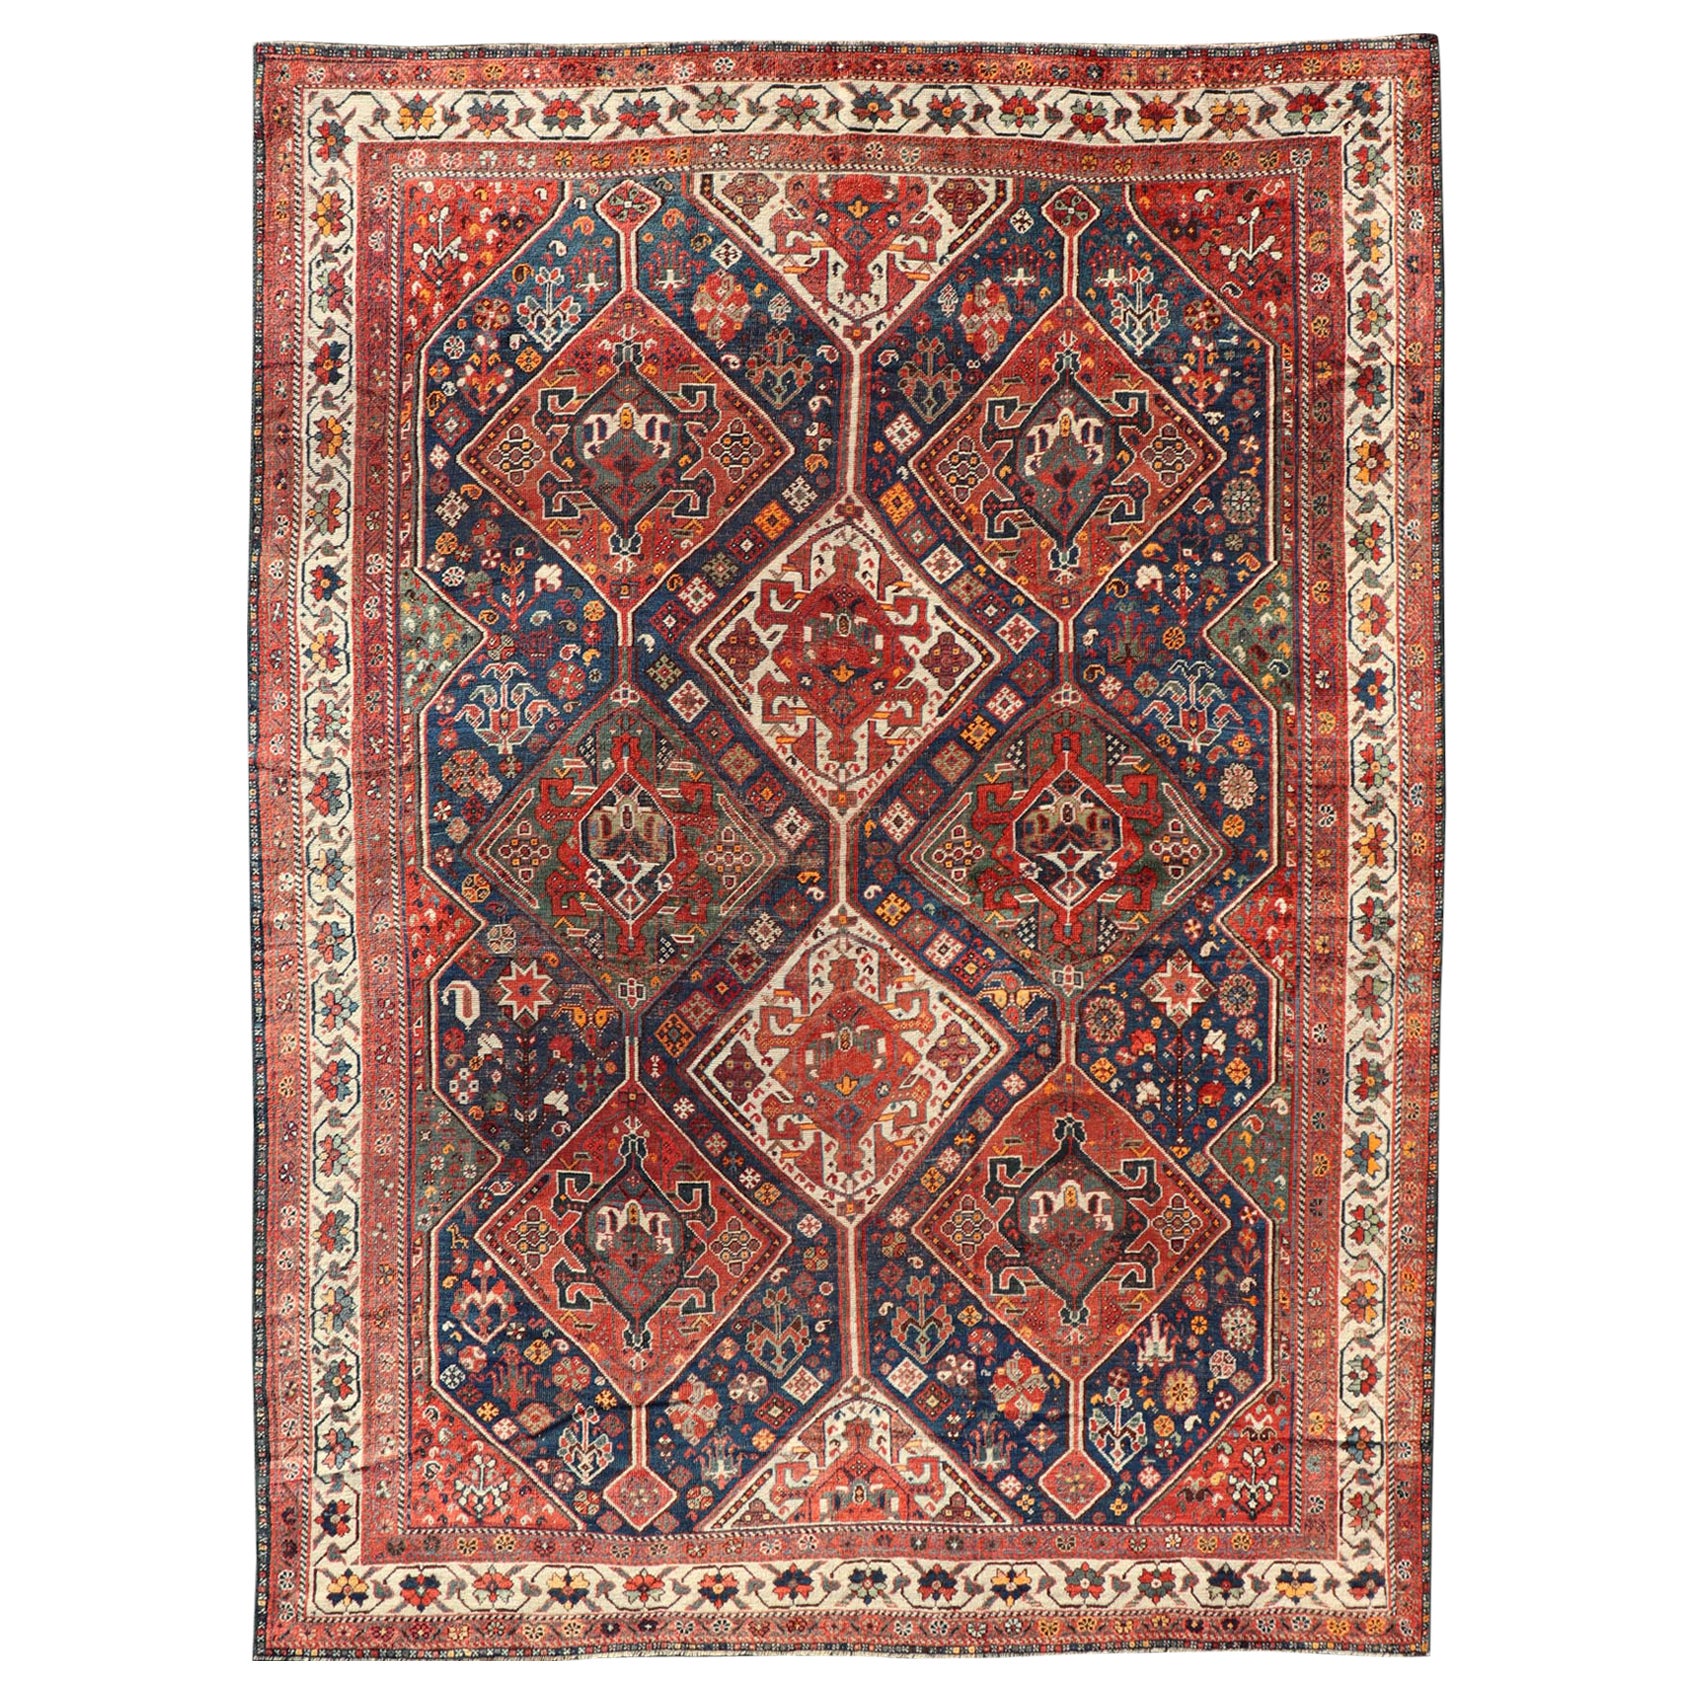 Antiker persischer Shiraz-Teppich mit Diamant-Medaillons in Marineblau, Rot und Elfenbein